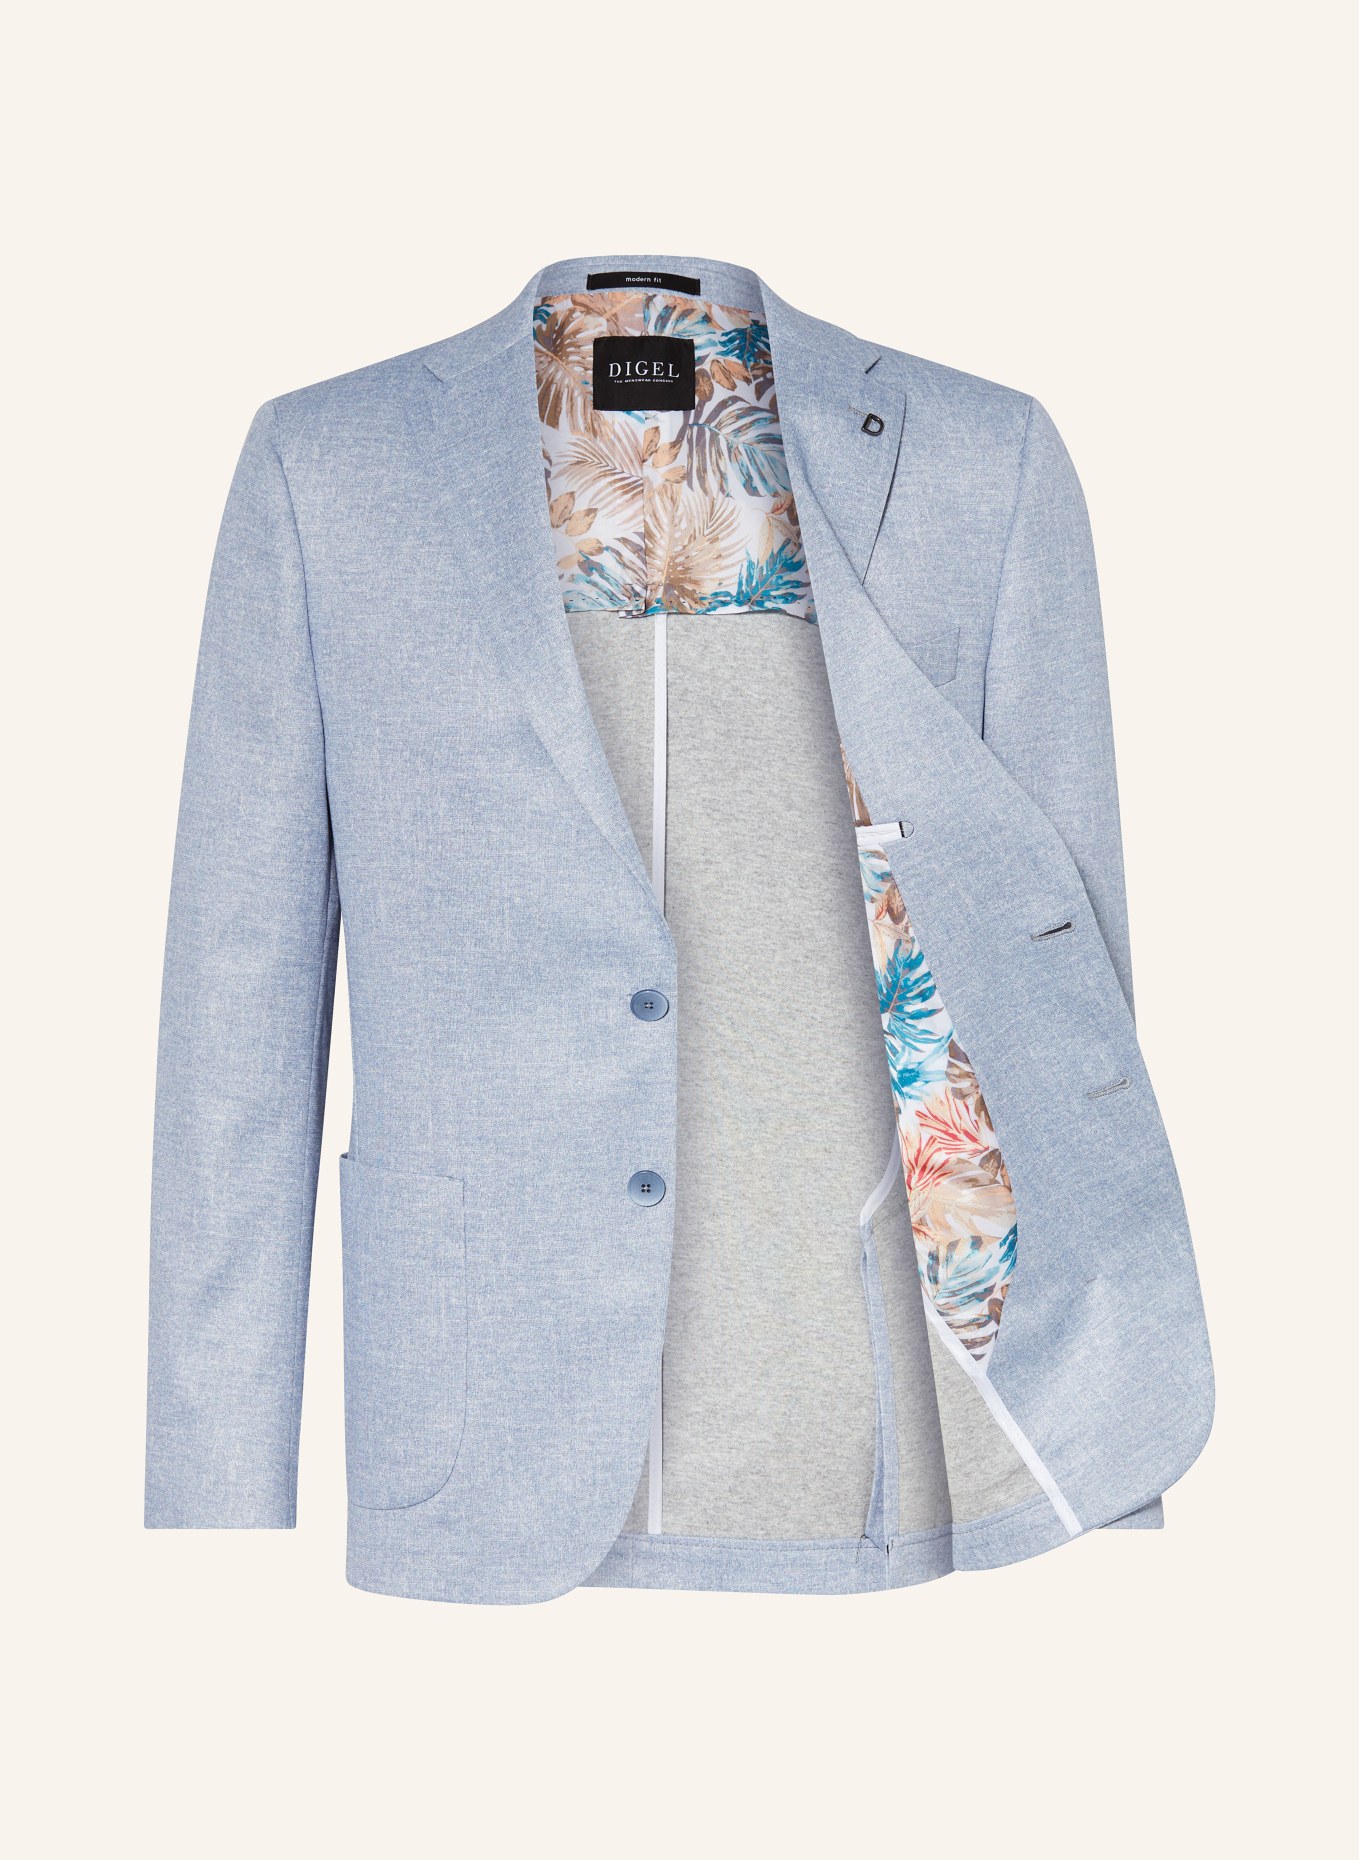 DIGEL Suit jacket EDWARD regular fit in jersey, Color: LIGHT BLUE (Image 4)